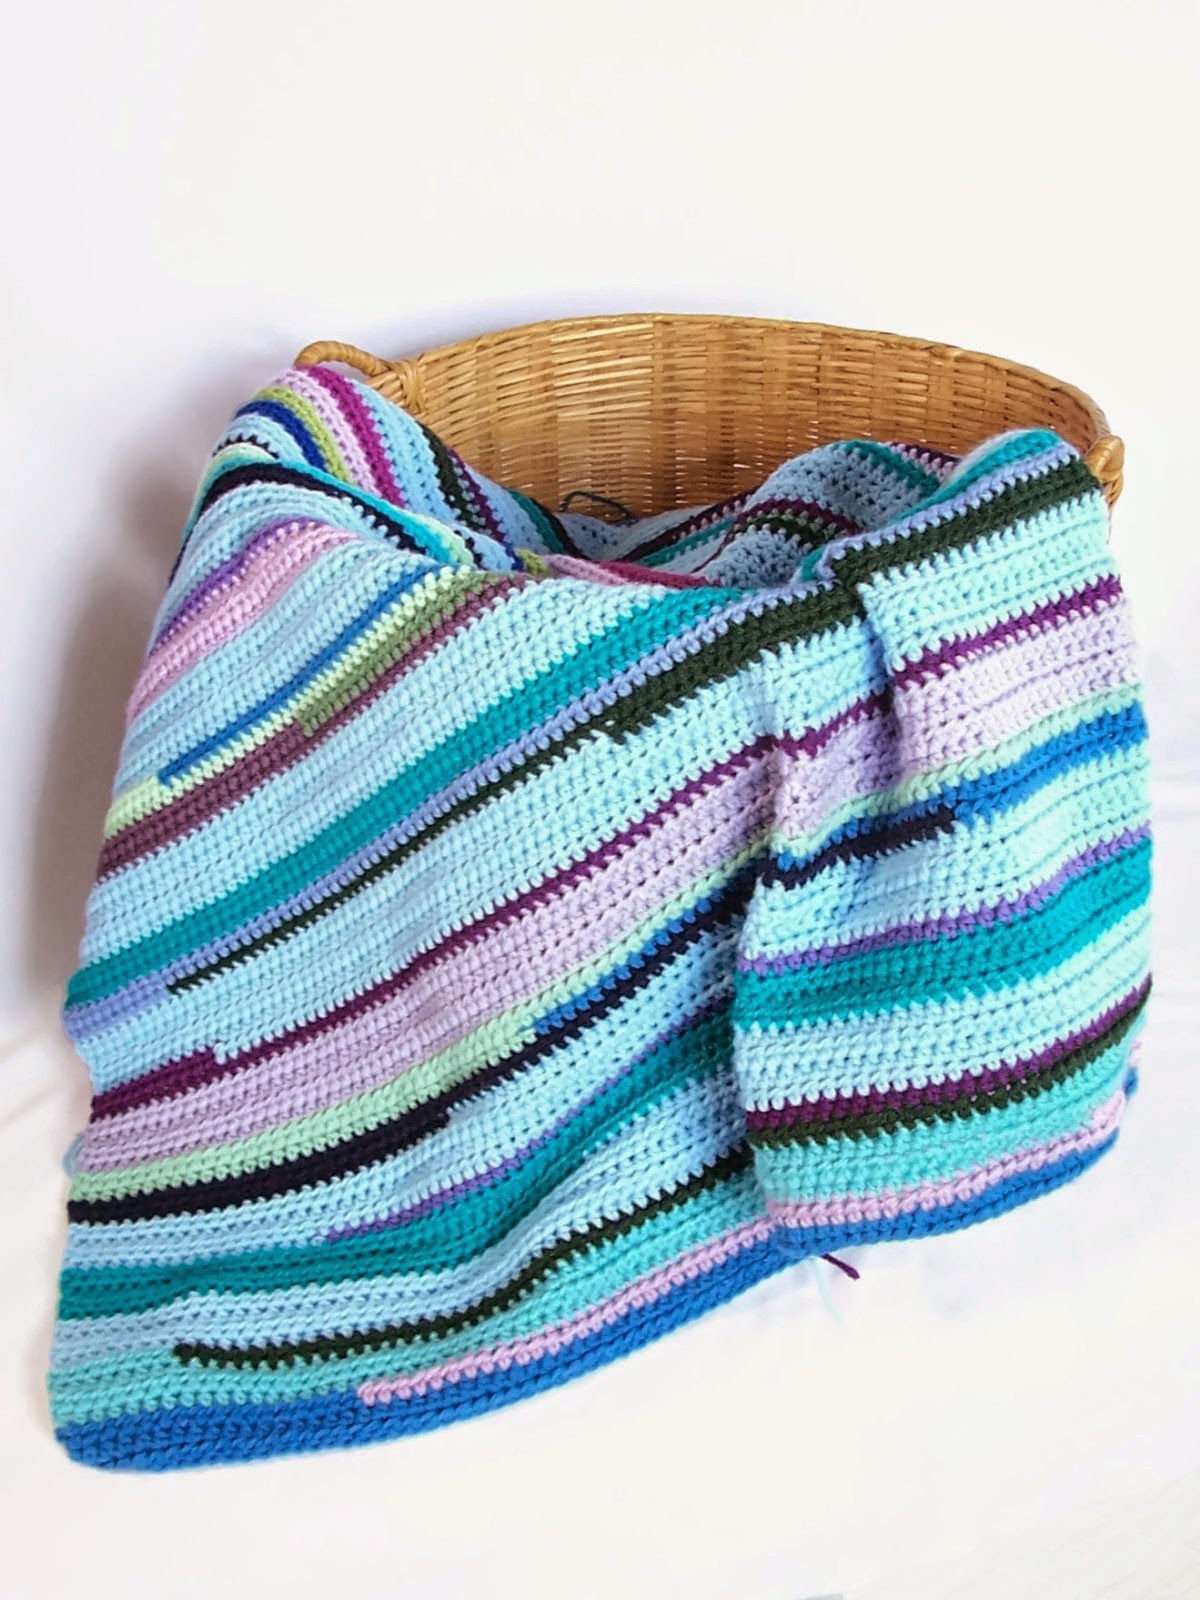 Scrap yarn ideas - Red Berry Crochet's Scrap Blanket